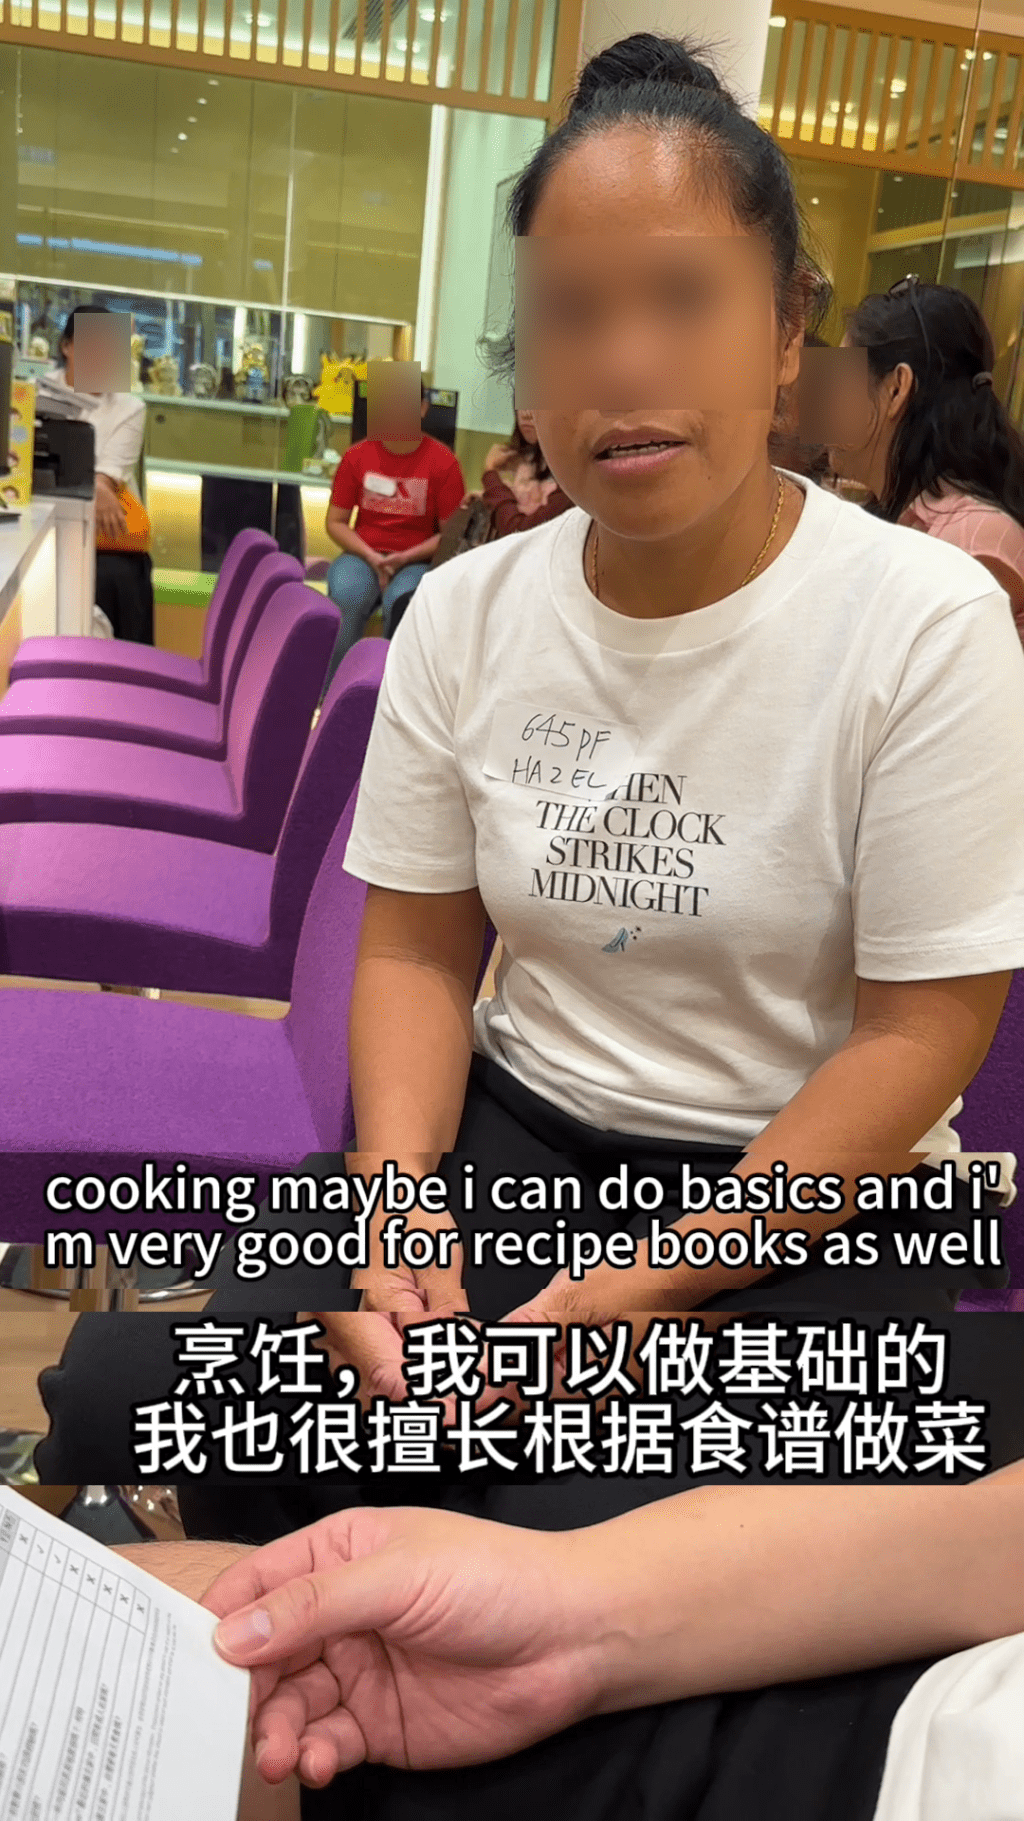 至於煮飯問題，她表示可做基本菜式，亦擅長跟食譜煮飯。